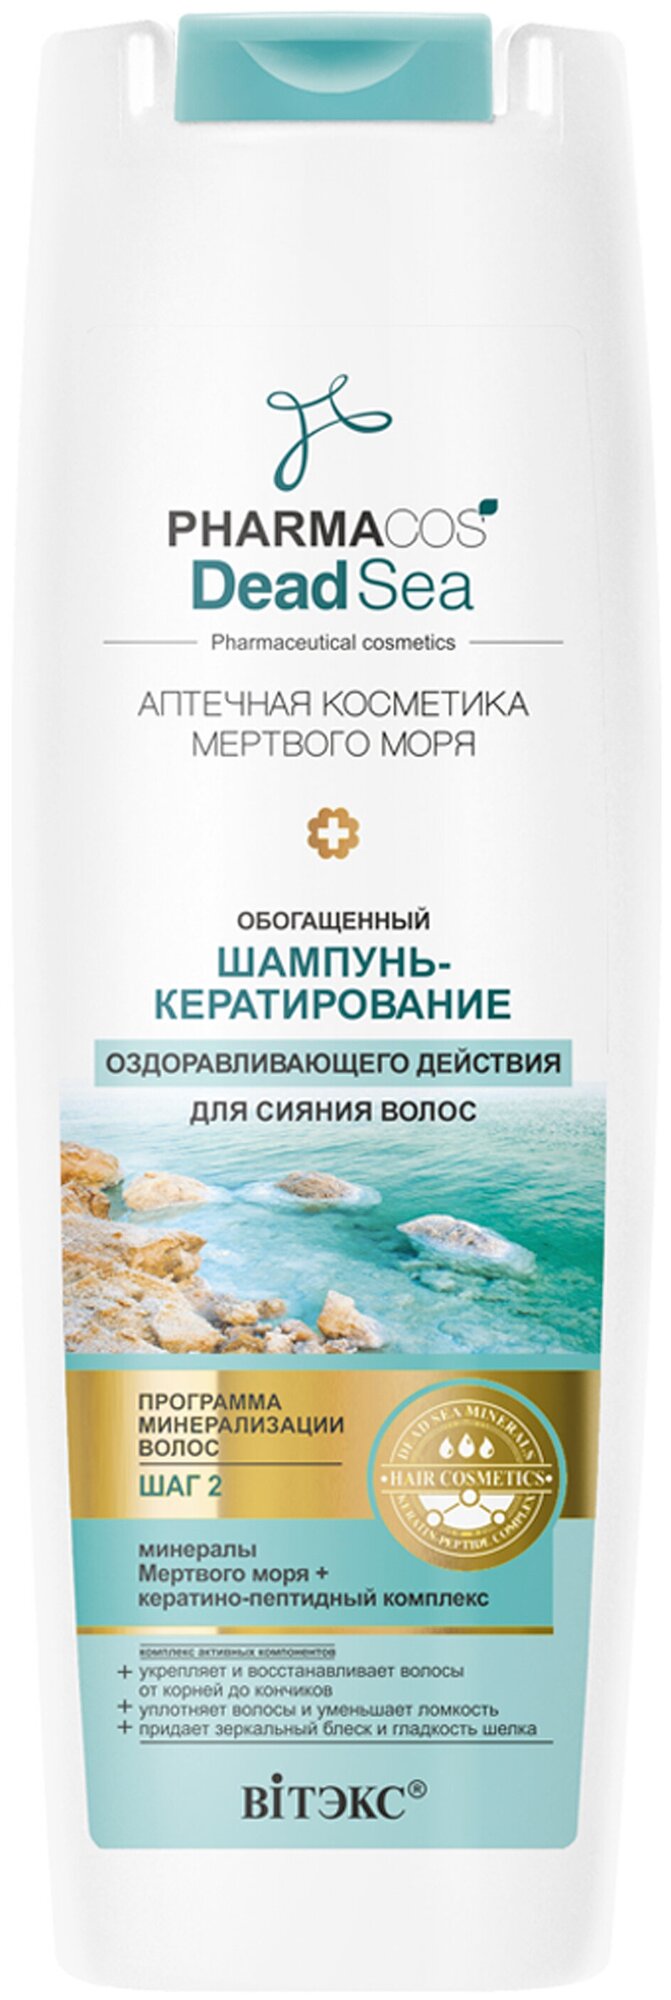 Витэкс шампунь-кератирование Pharmacos Dead Sea Аптечная косметика Мертвого моря Оздоравливающего действия для сияния волос